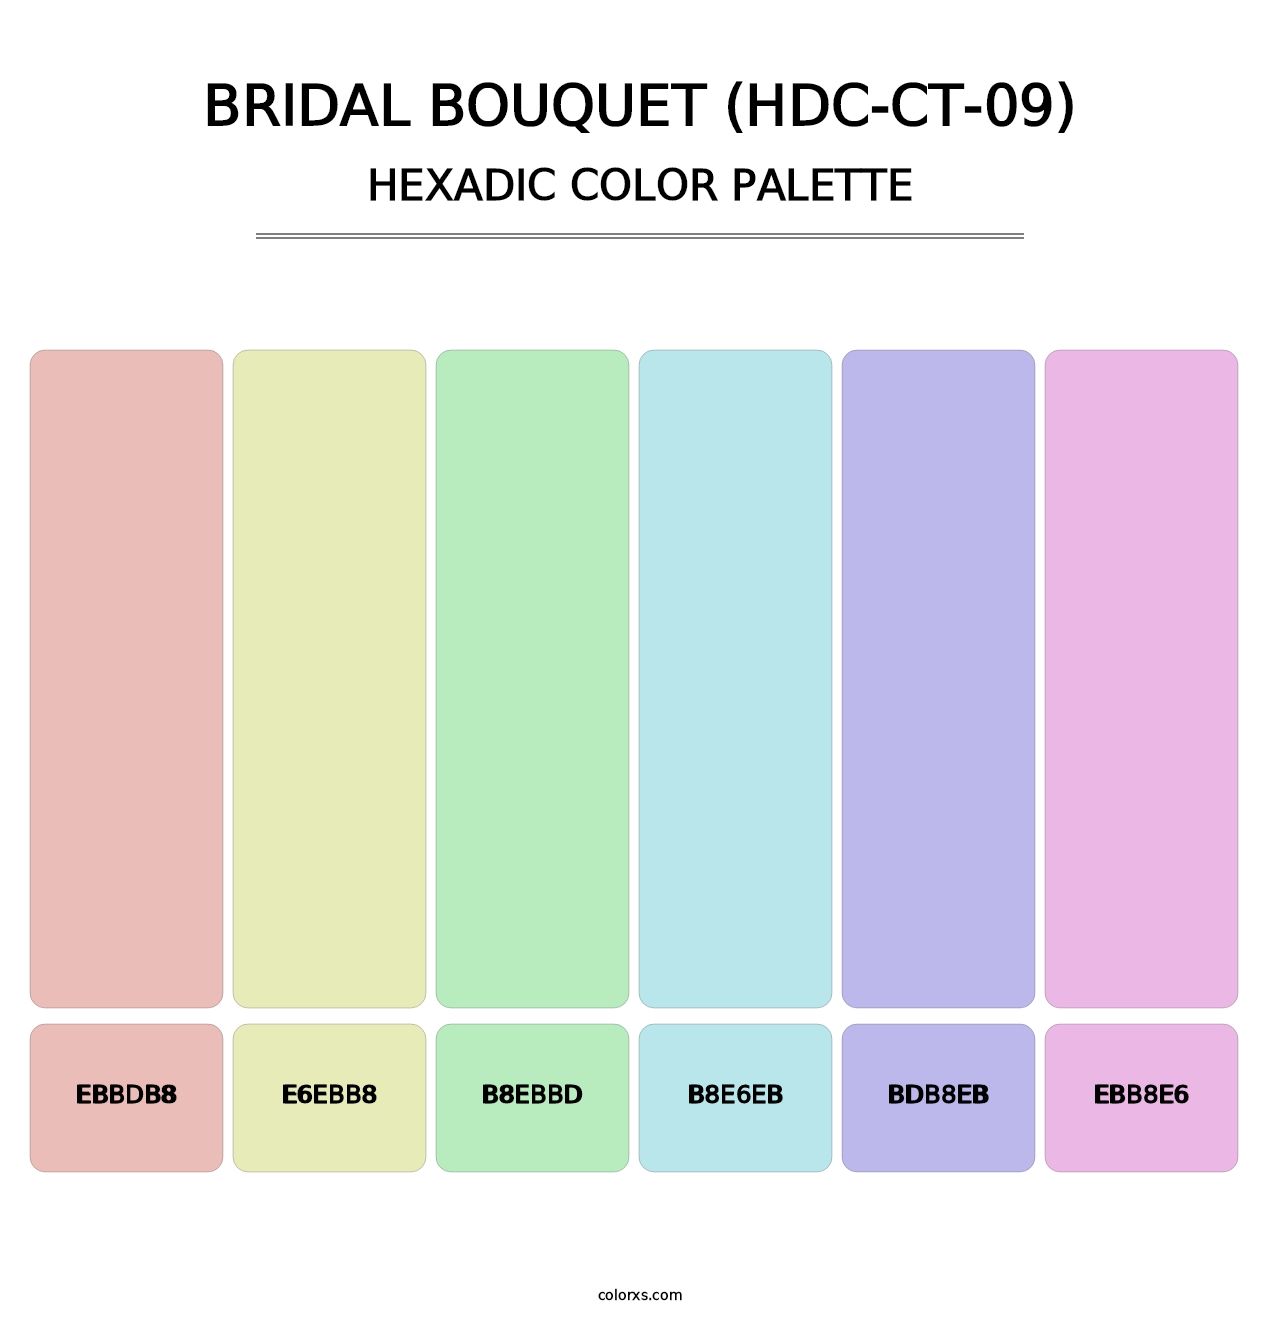 Bridal Bouquet (HDC-CT-09) - Hexadic Color Palette